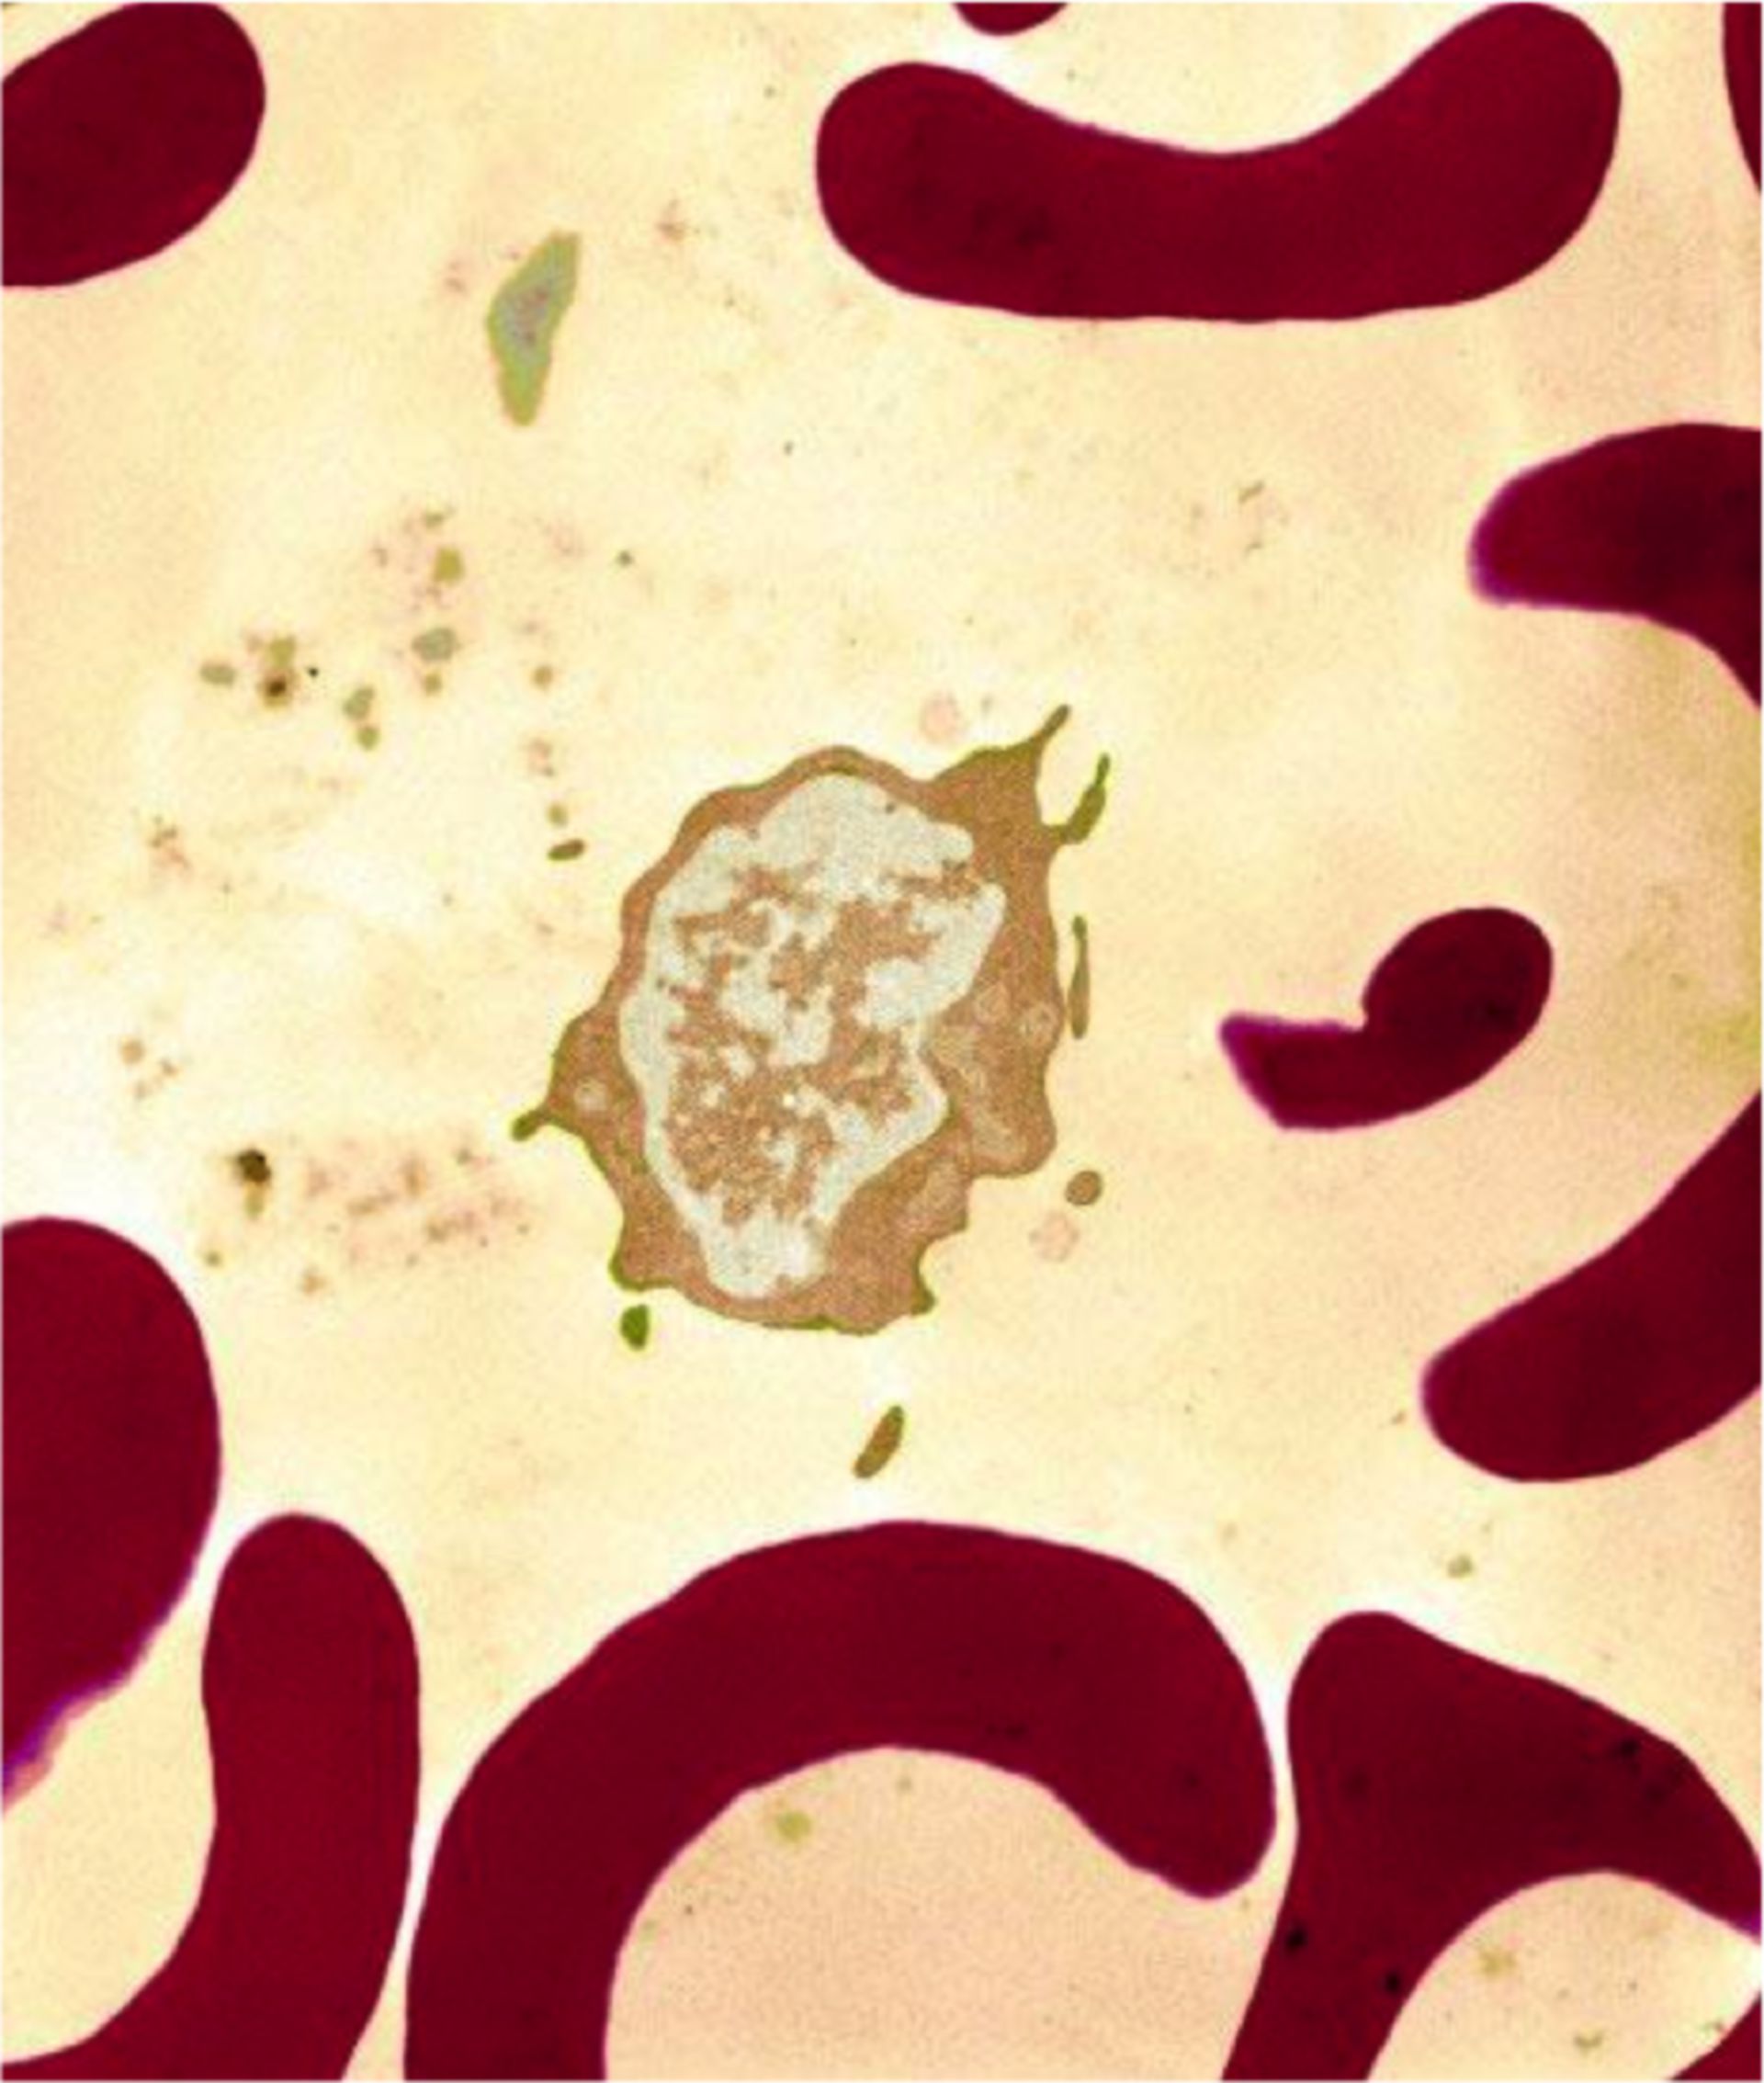 Blut: Weiße und rote Blutkörperchen